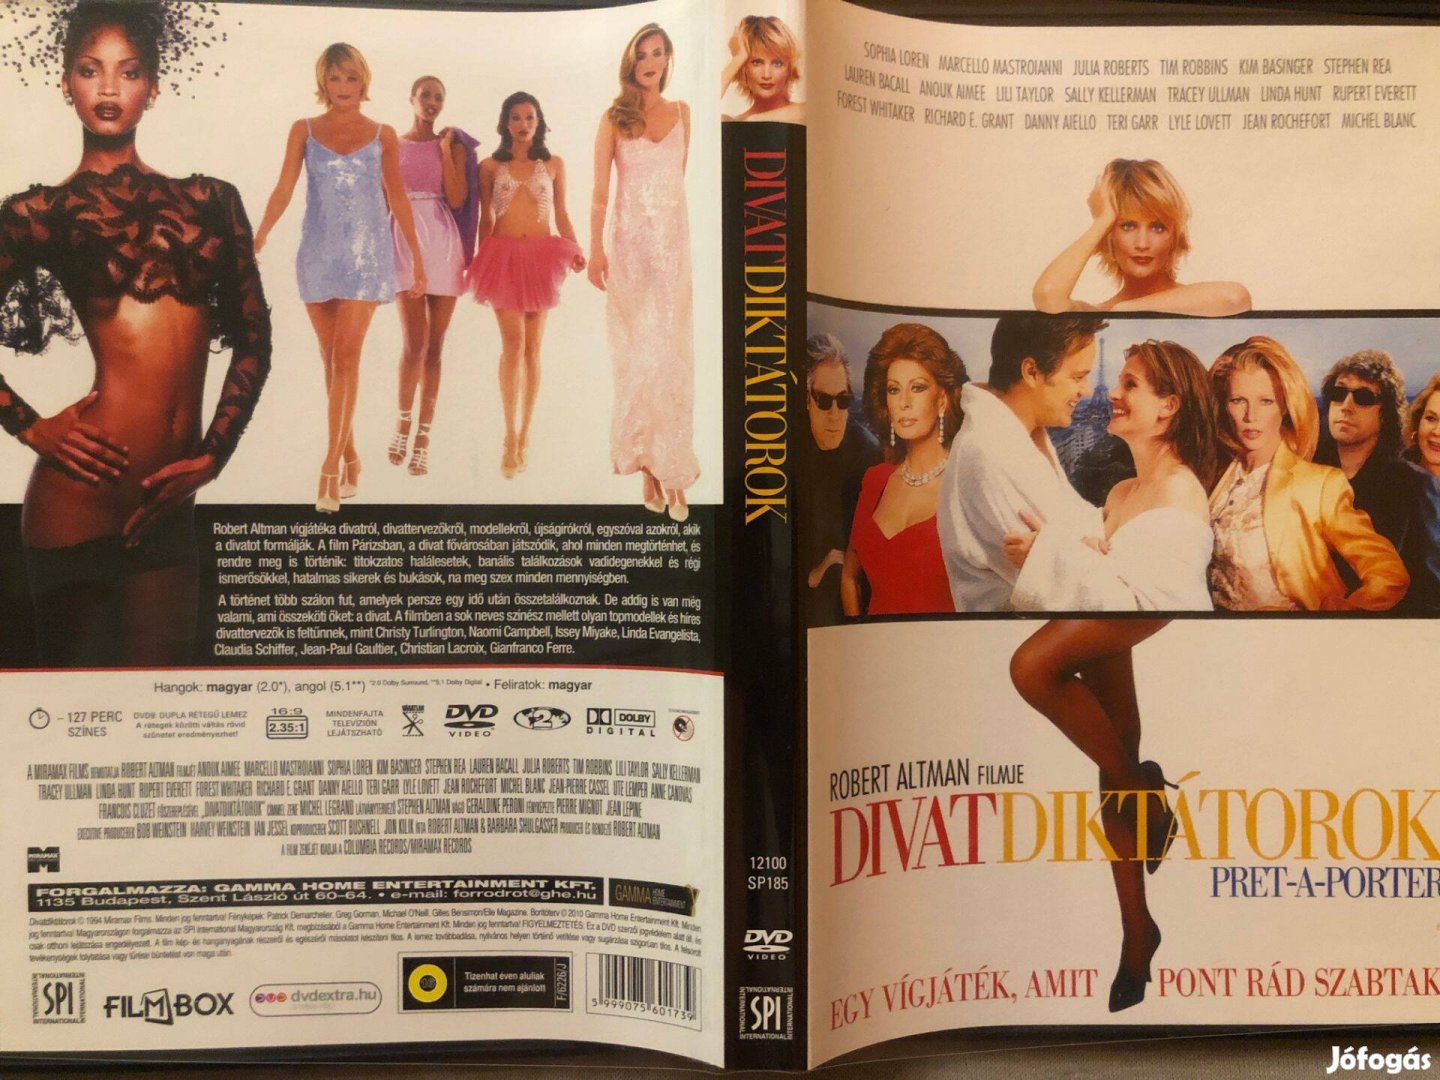 Divatdiktátorok - Pret-A-Porter DVD (karcmentes, Filmbox kiadás)